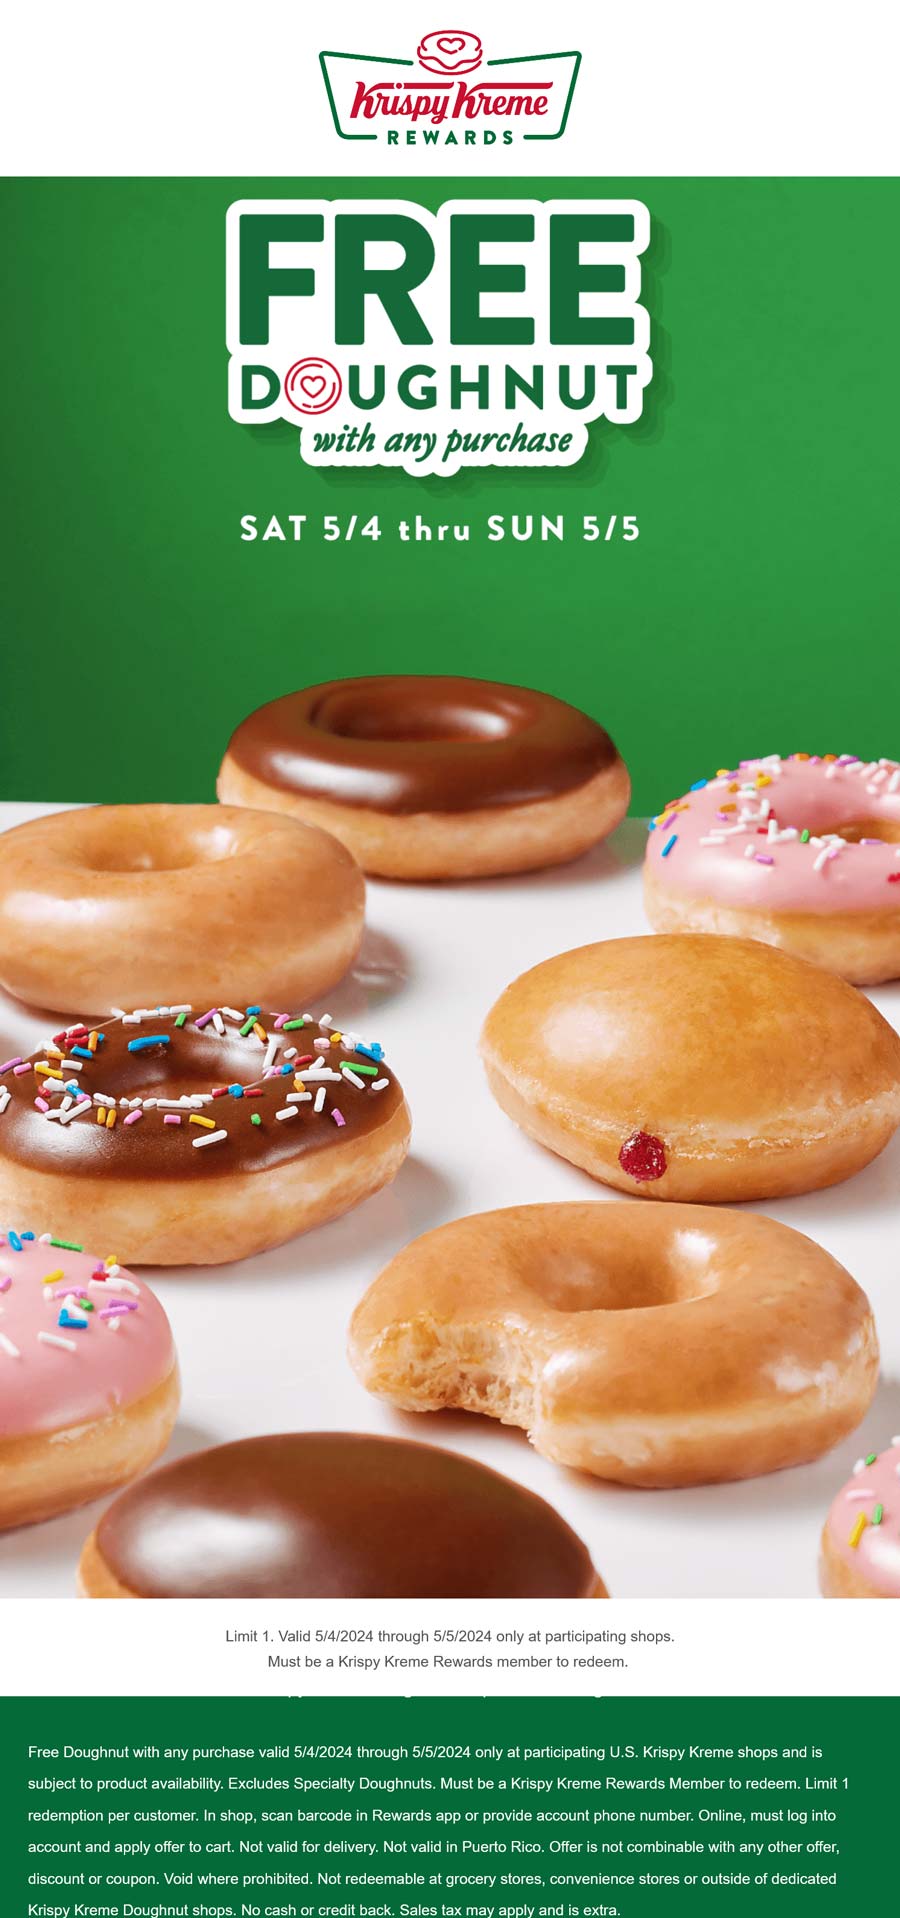 Krispy Kreme restaurants Coupon  Free doughnut with any mobile order today at Krispy Kreme #krispykreme 